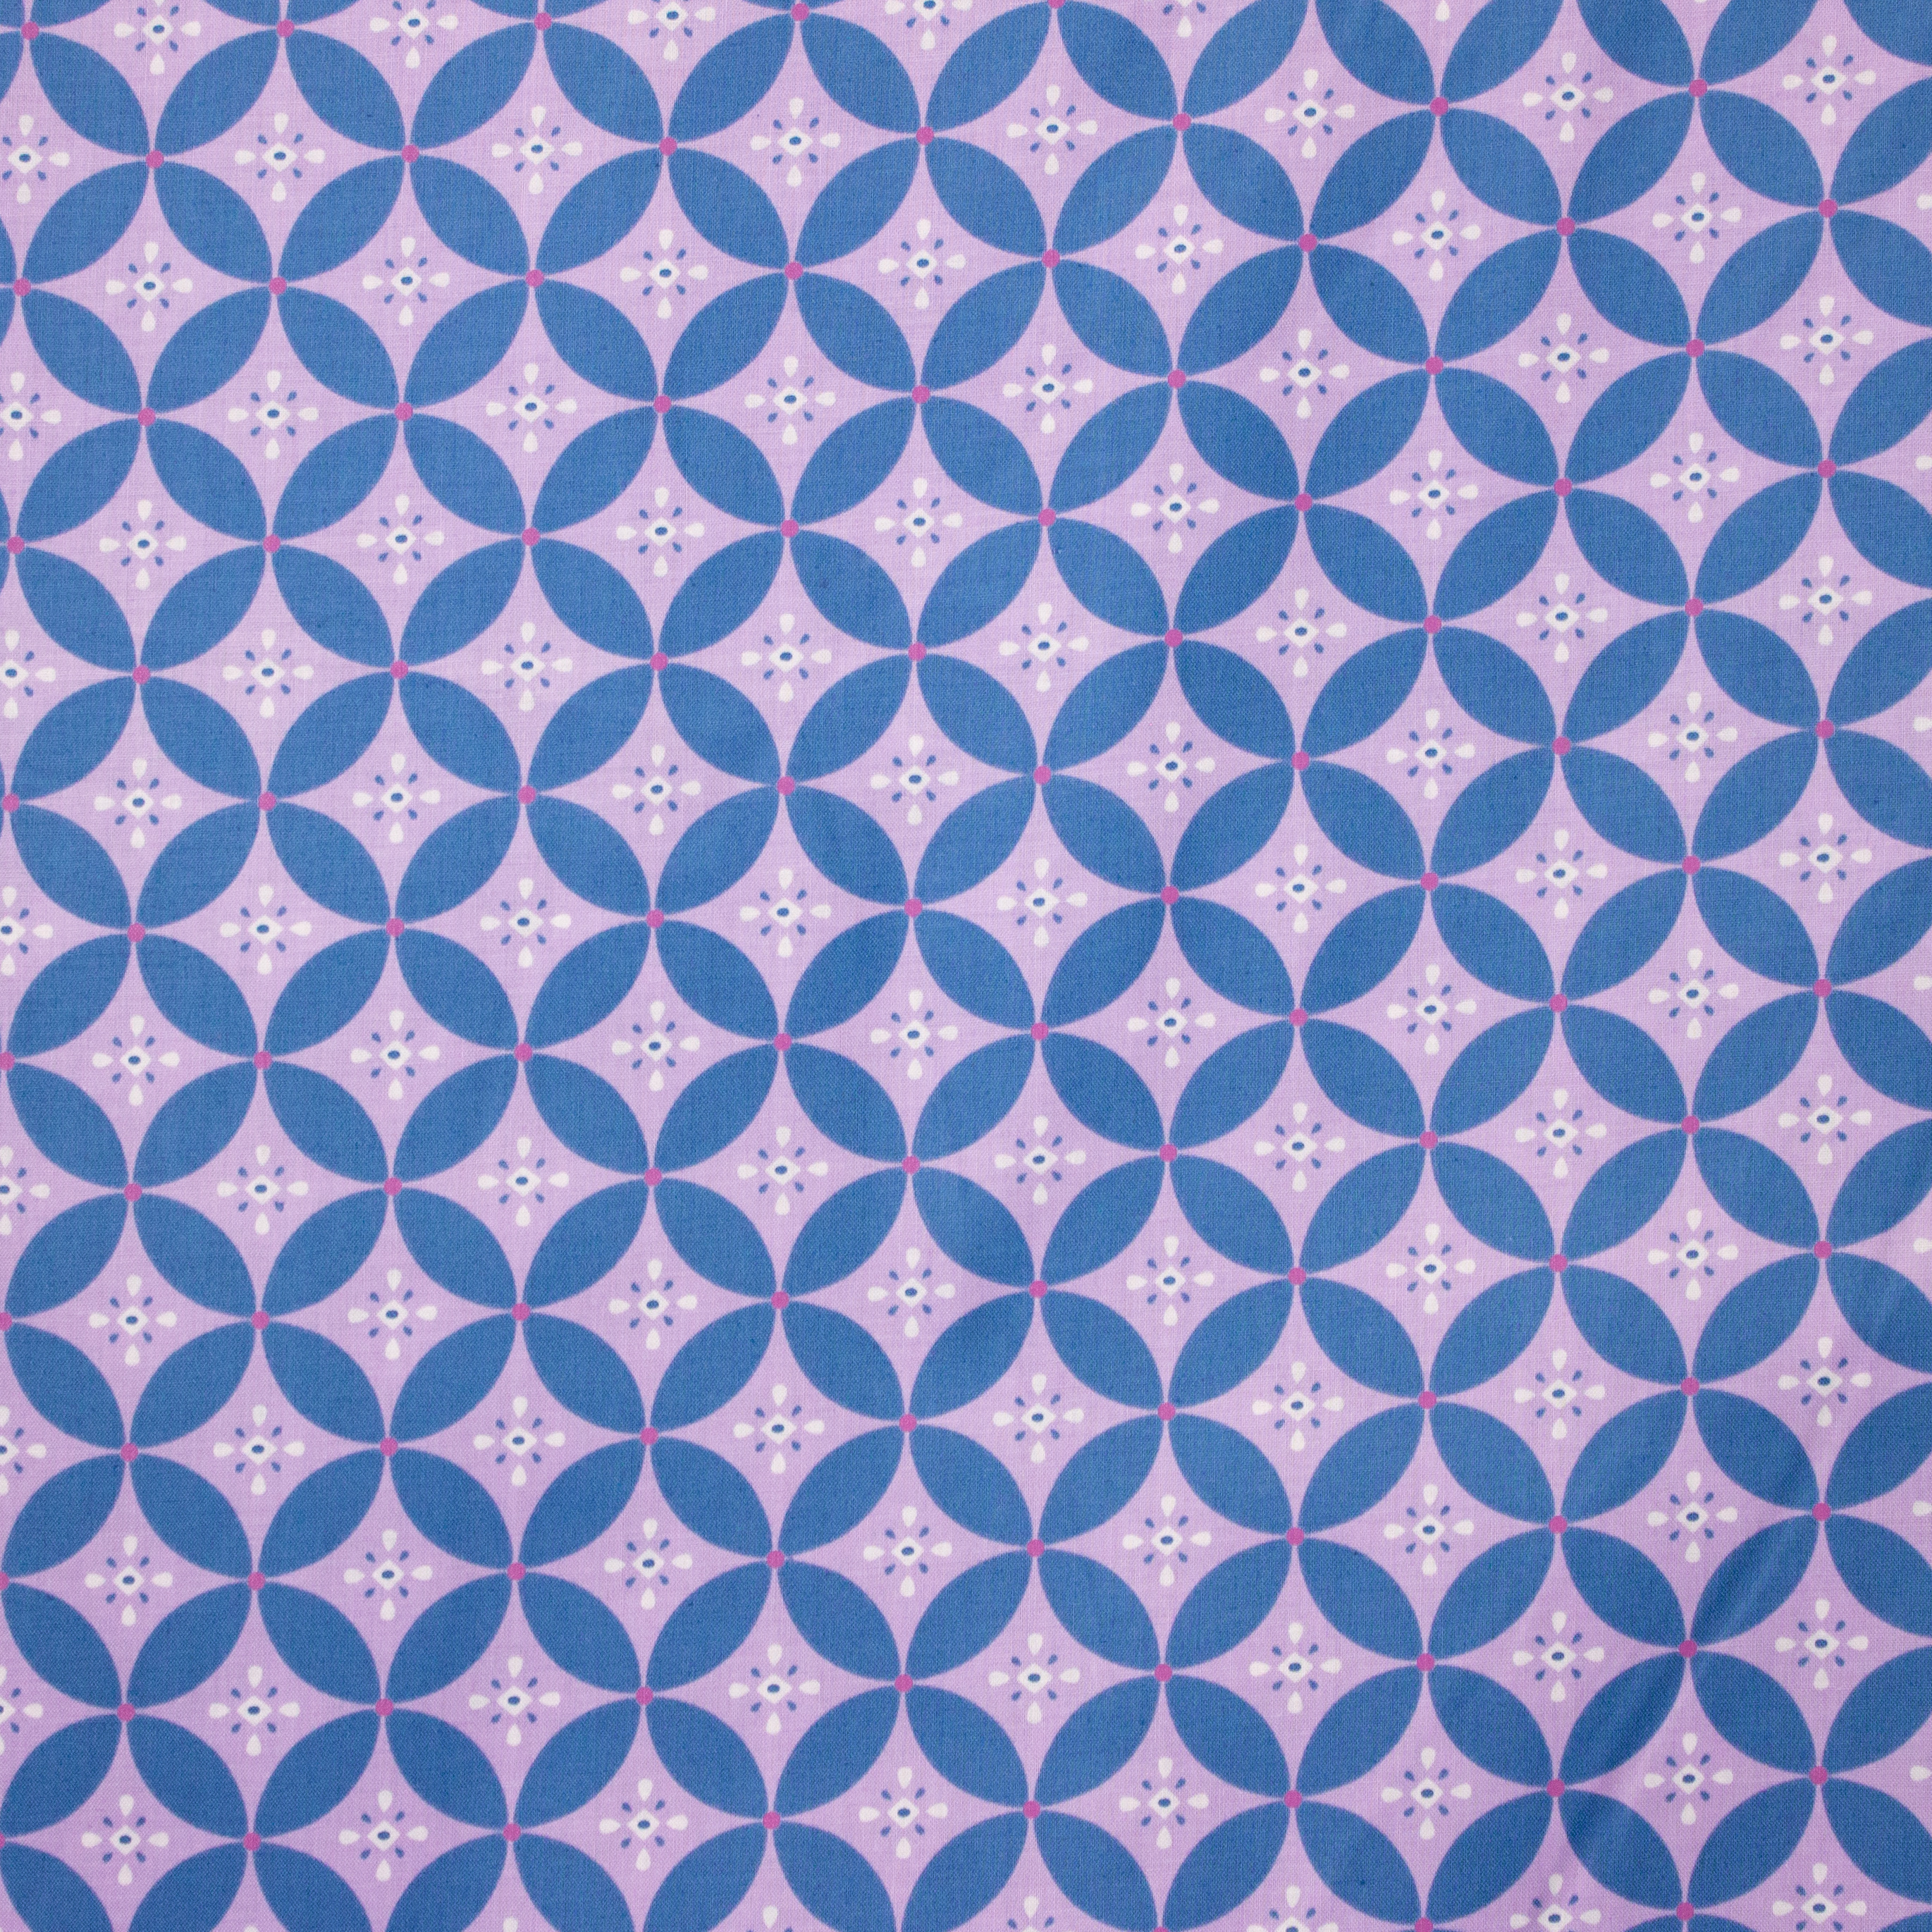 Lila katoen met blauw patroon